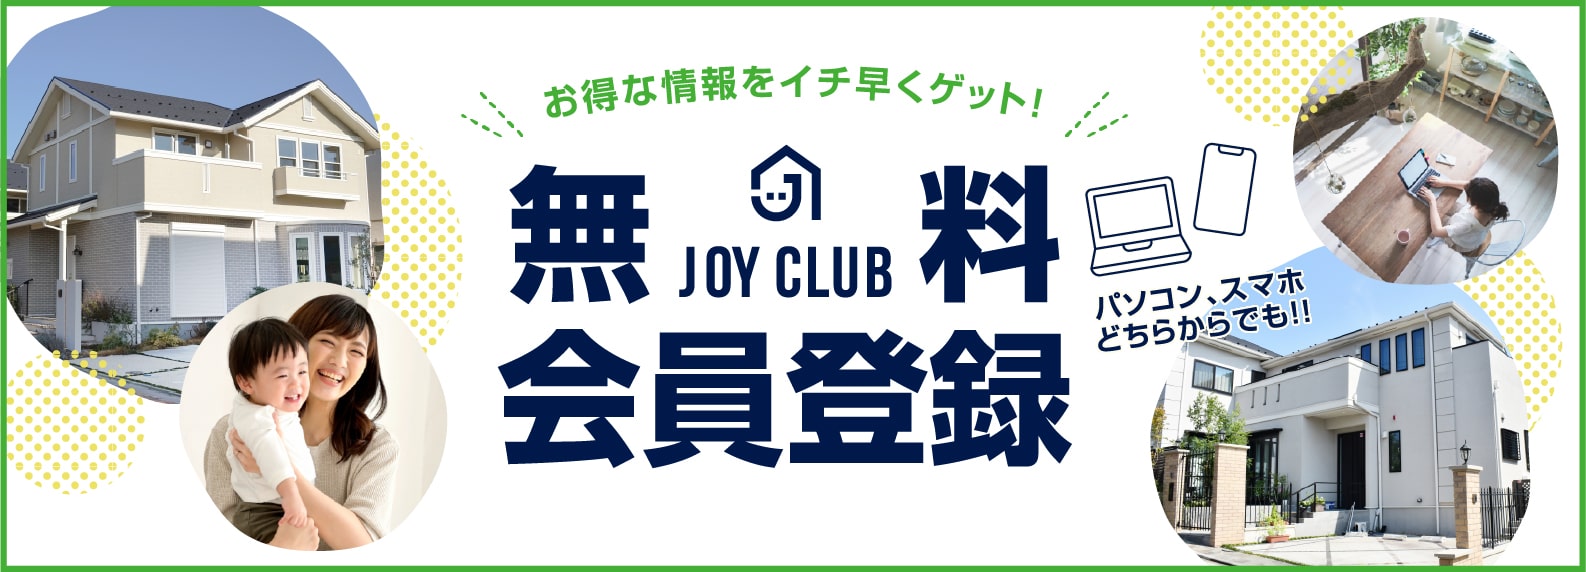 JOY CLUB｜お得な情報をイチ早くゲット！！｜無料会員募集中